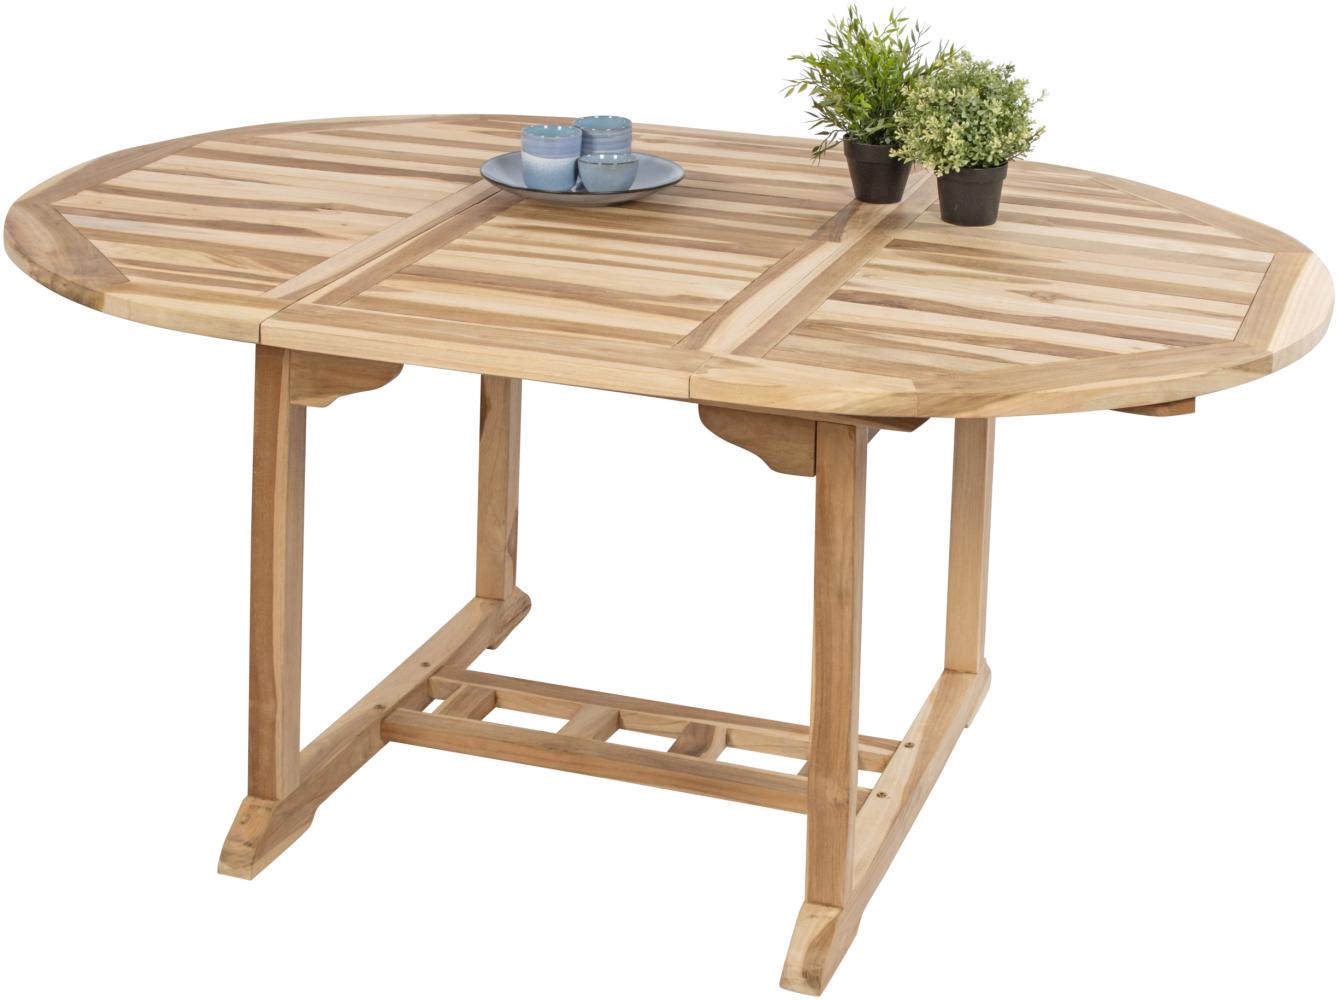 Gartentisch ausziehbar Teak Holz 120 - 170 cm oval BORNEO 34716508 Bild 1